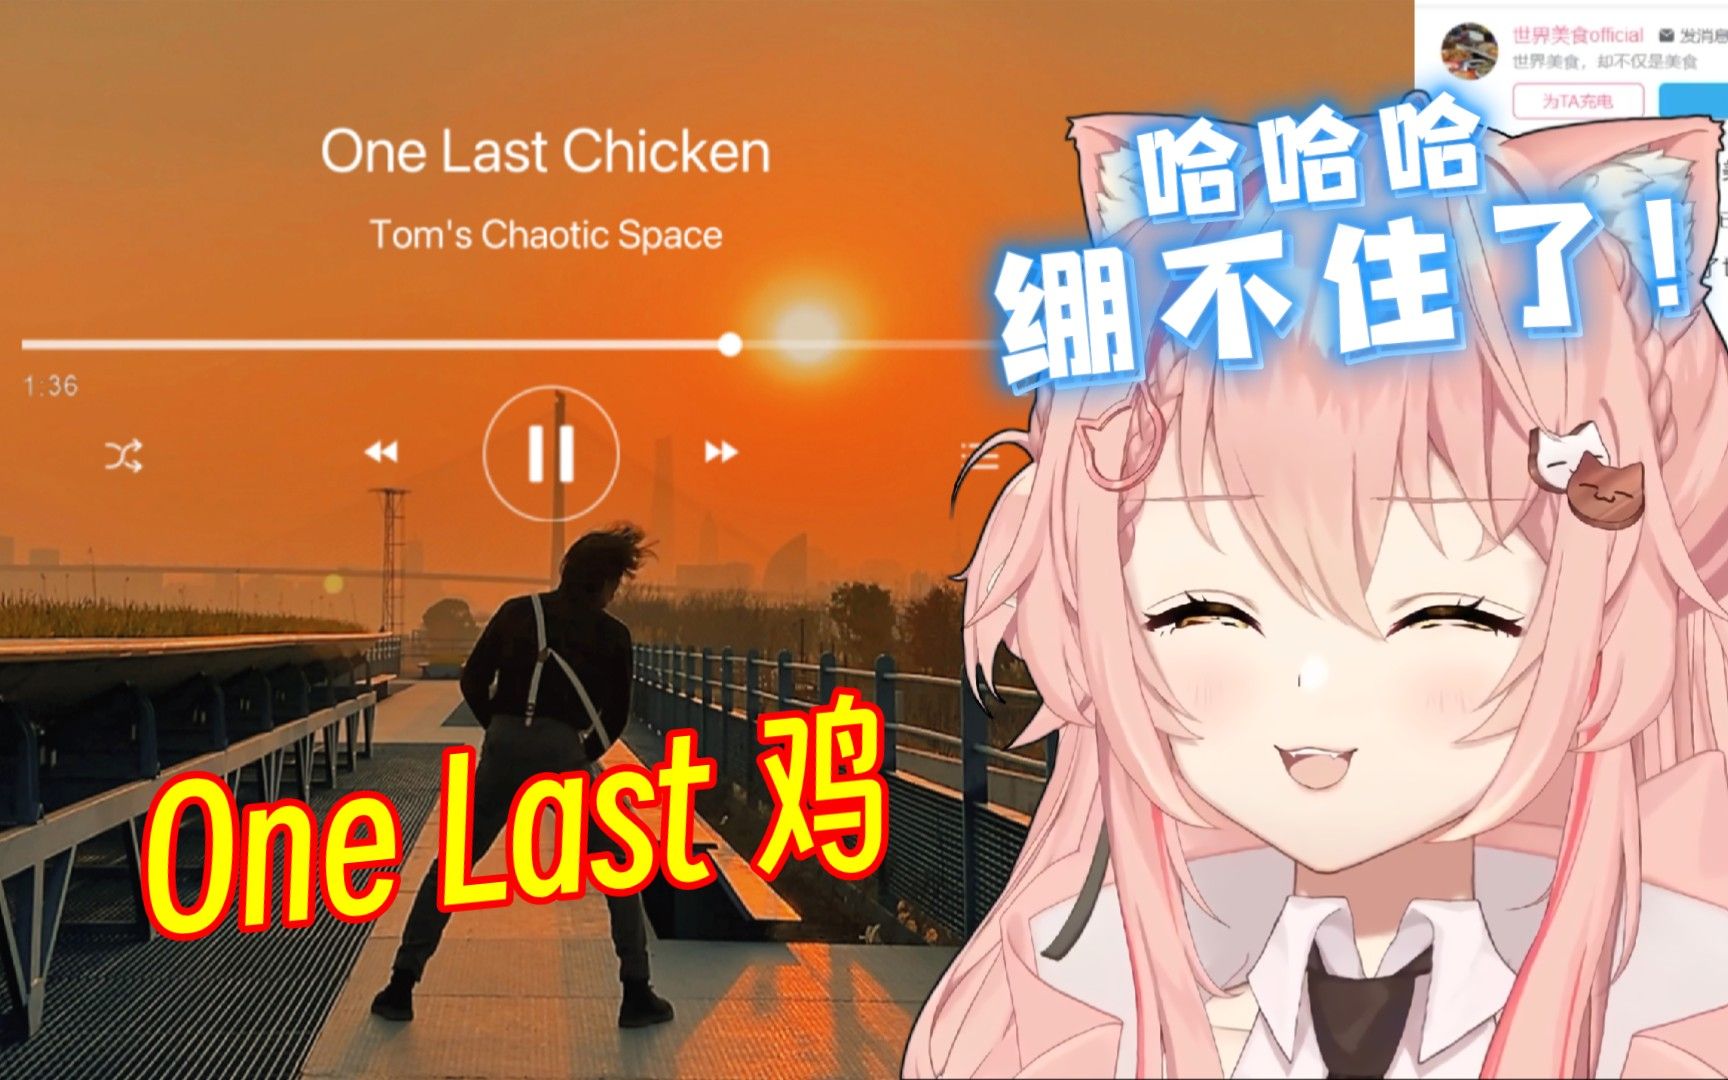 外国ikun看「One Last Chicken」所有的只因战士MV【Hiiro】蔡徐坤 小黑子